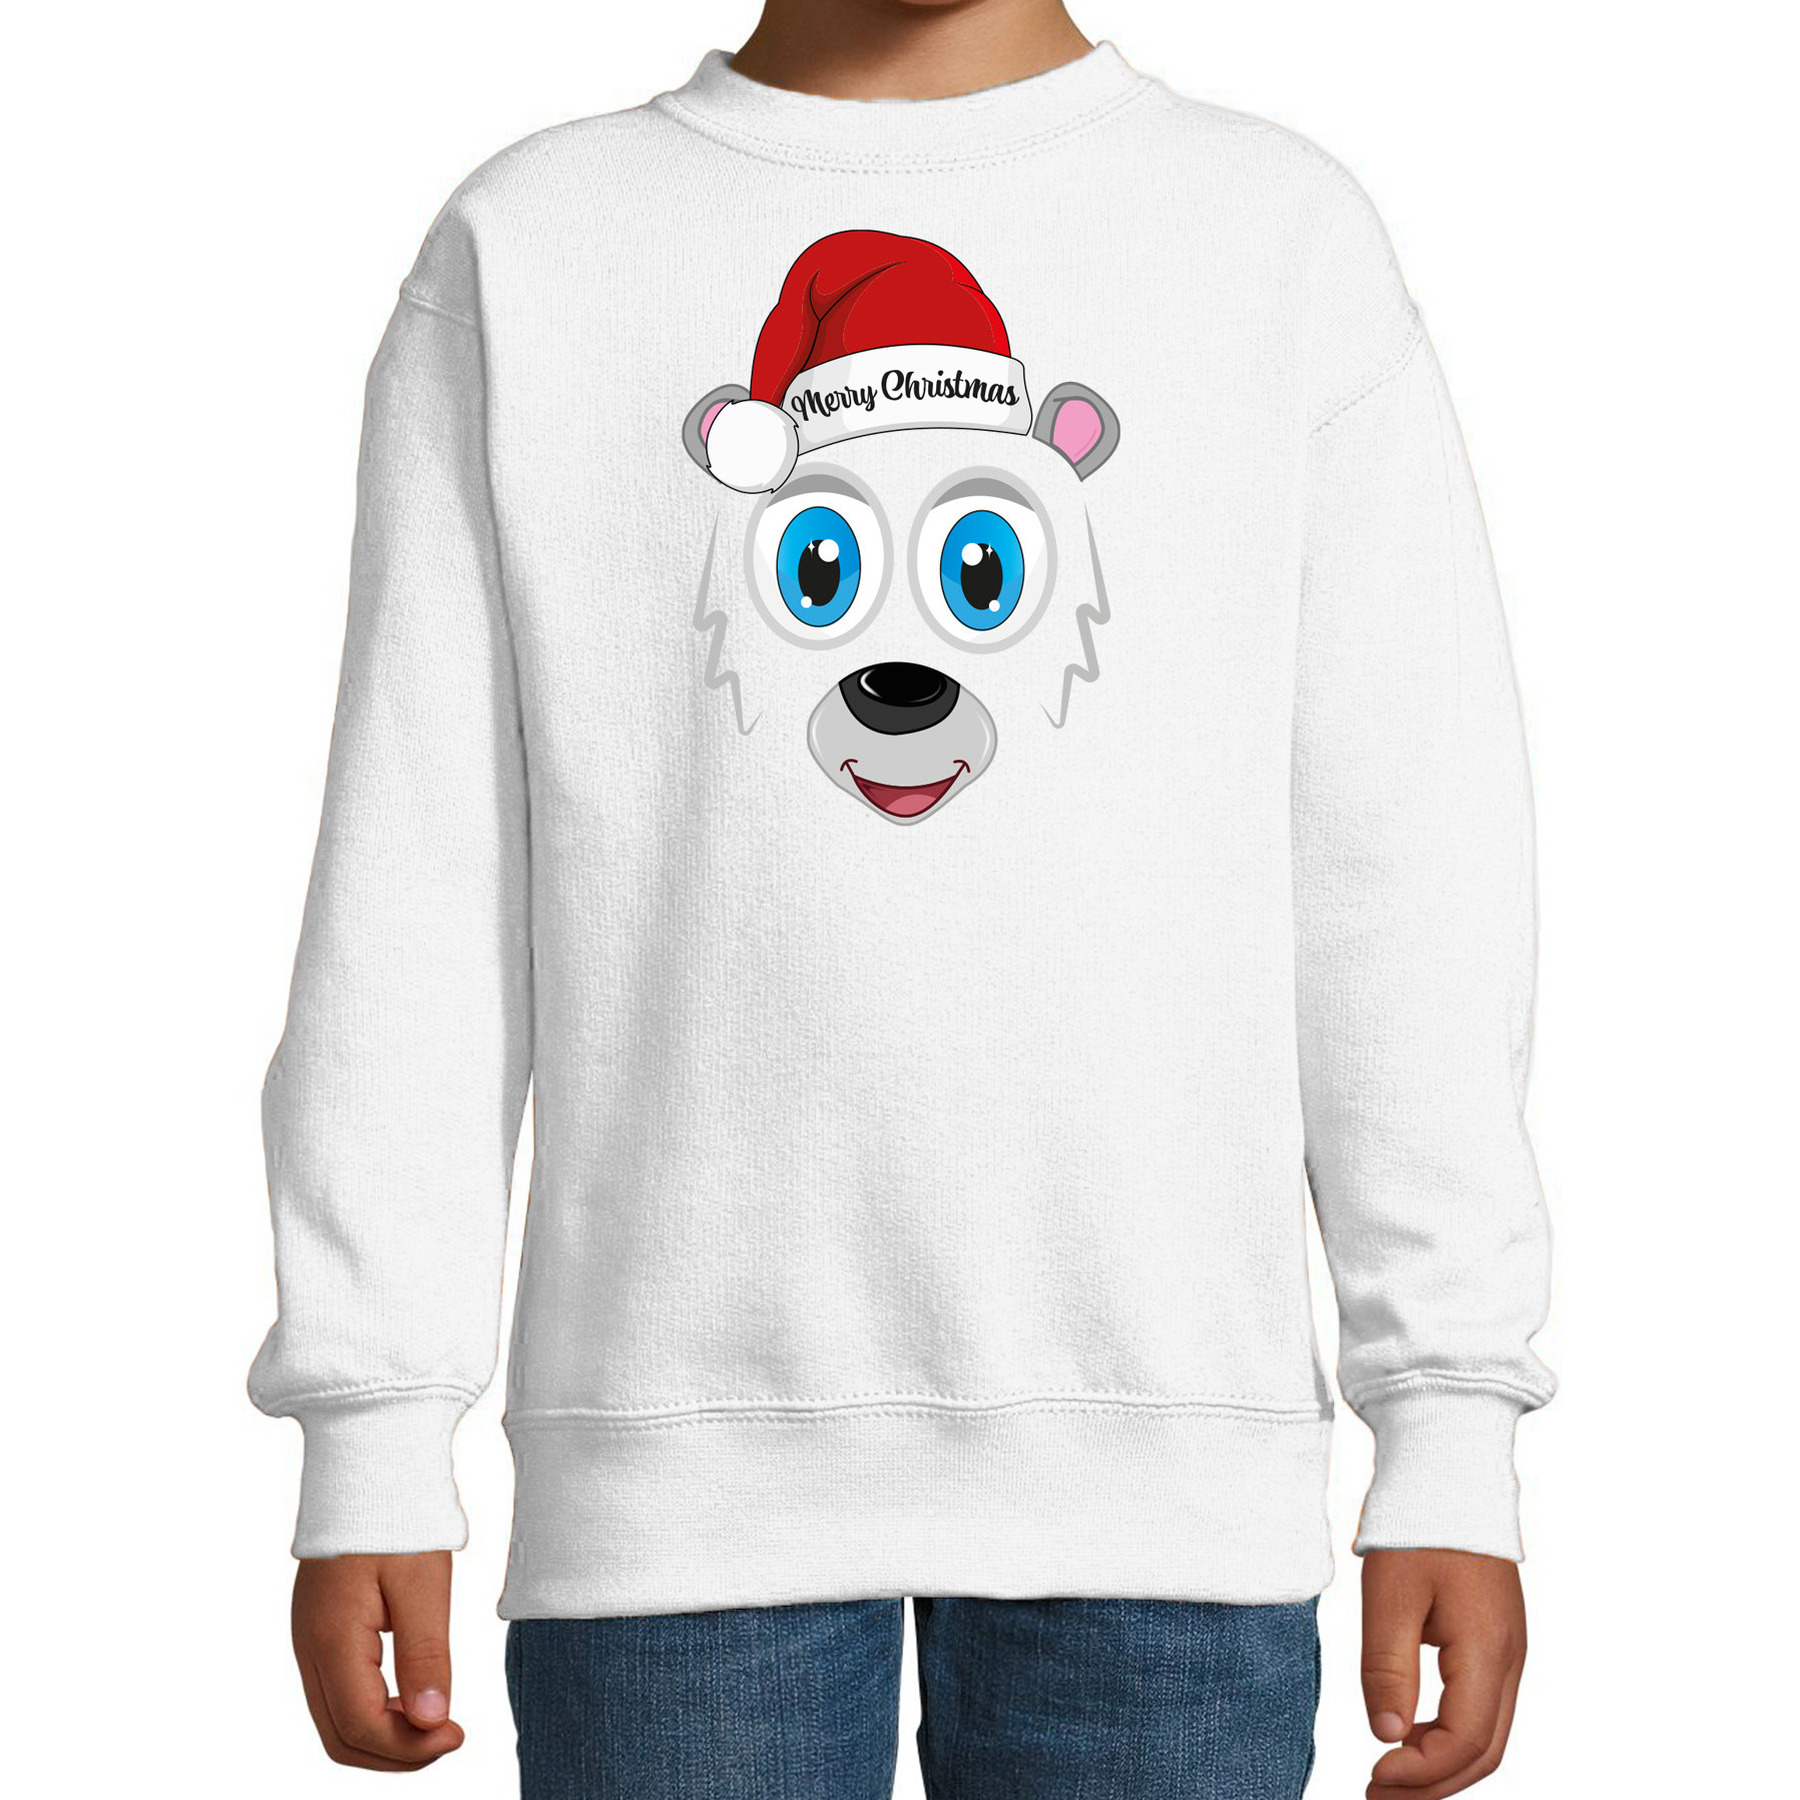 Kersttrui-sweater voor kinderen IJsbeer gezicht Merry Christmas wit